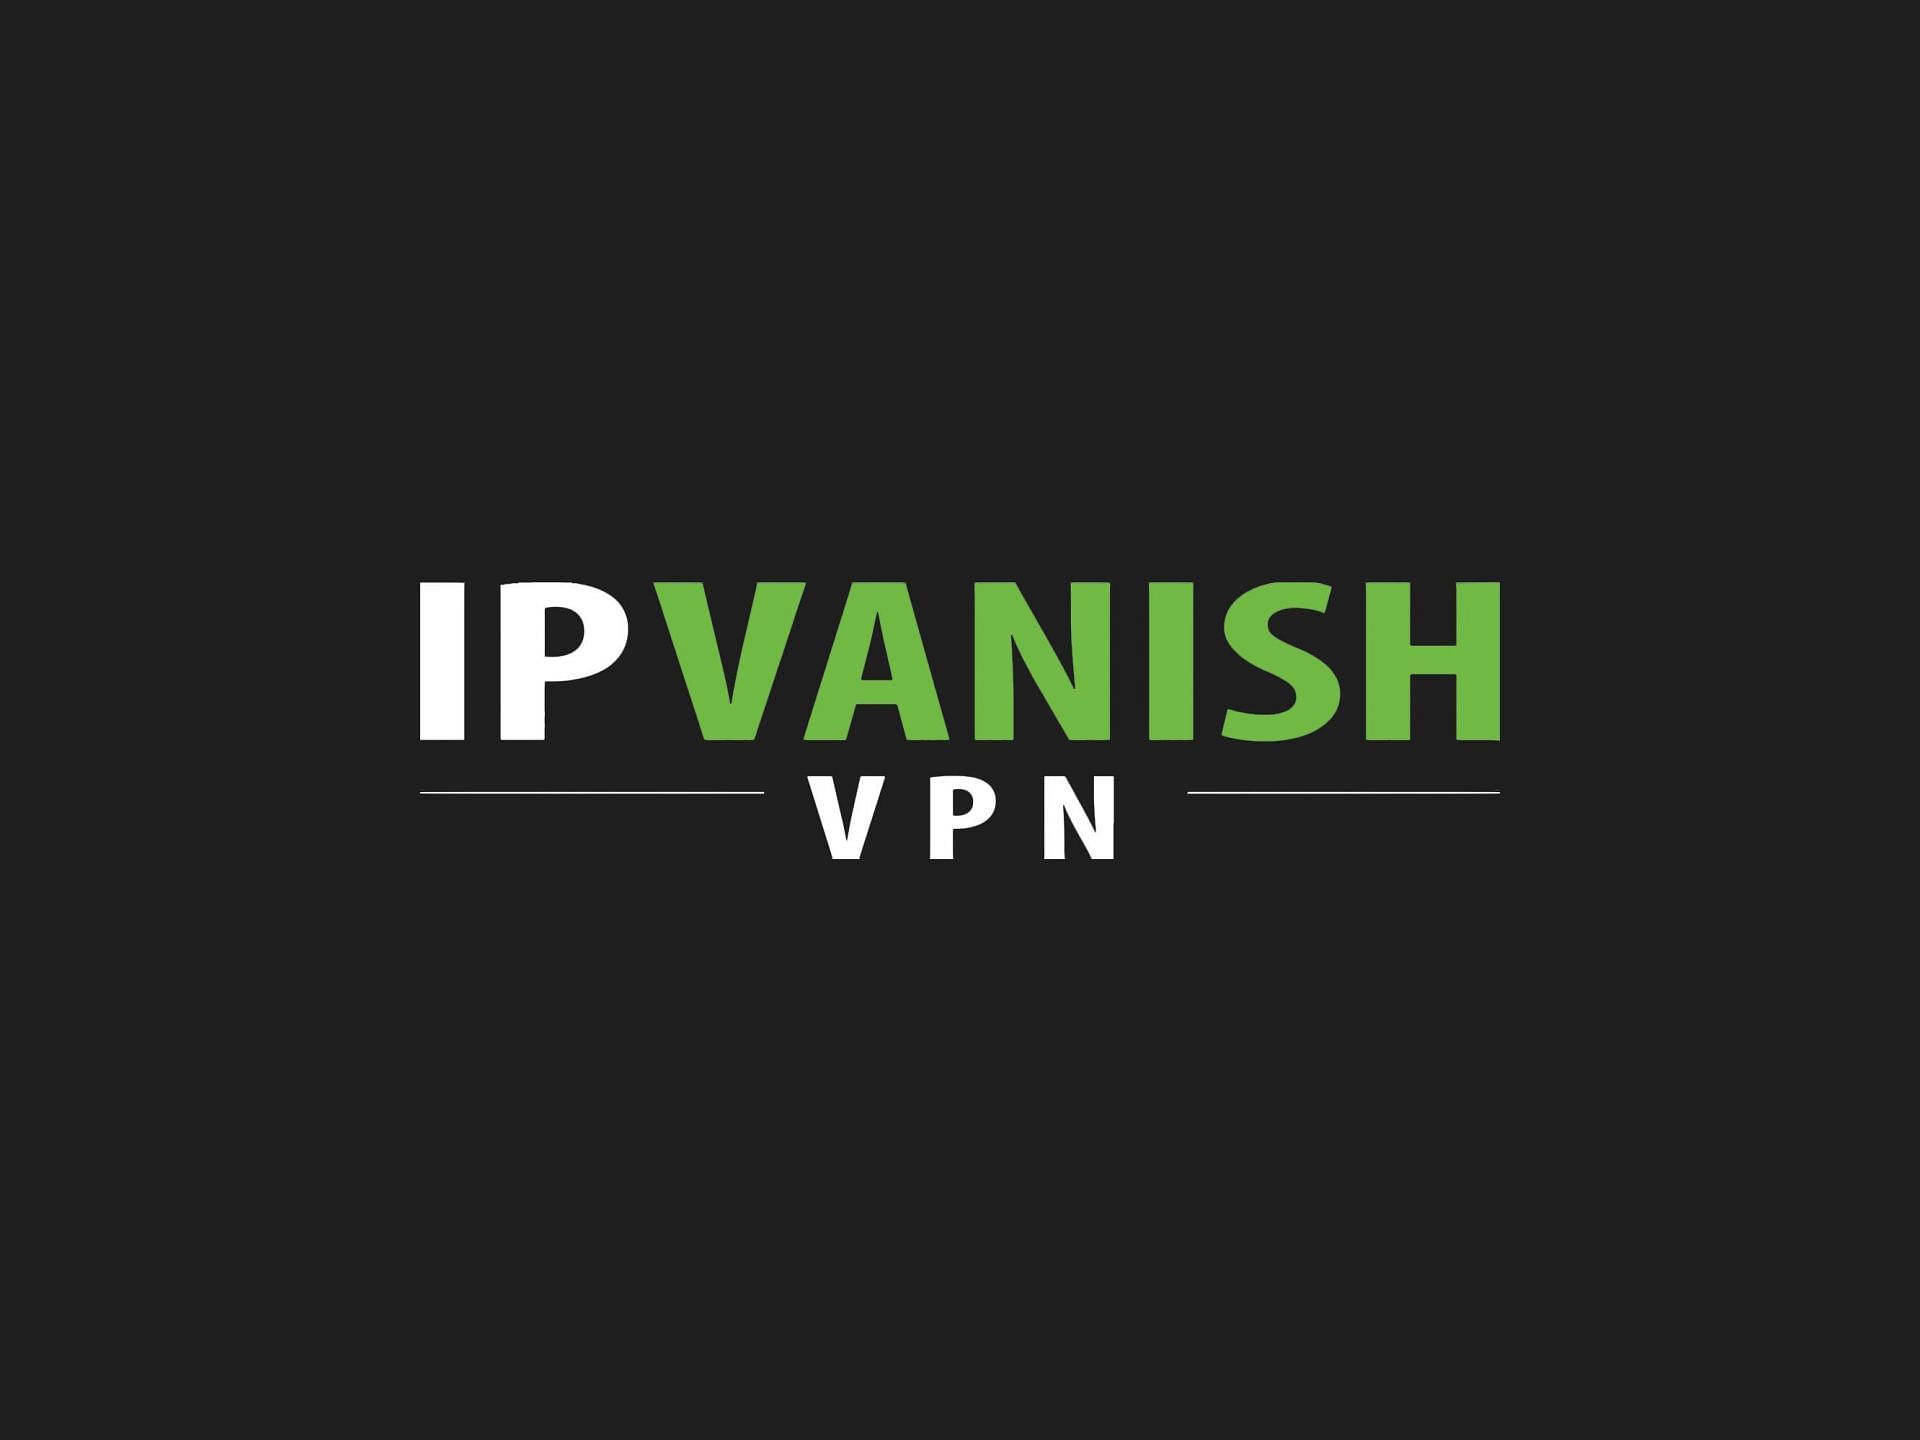 IPVanish (Image via IPVanish)